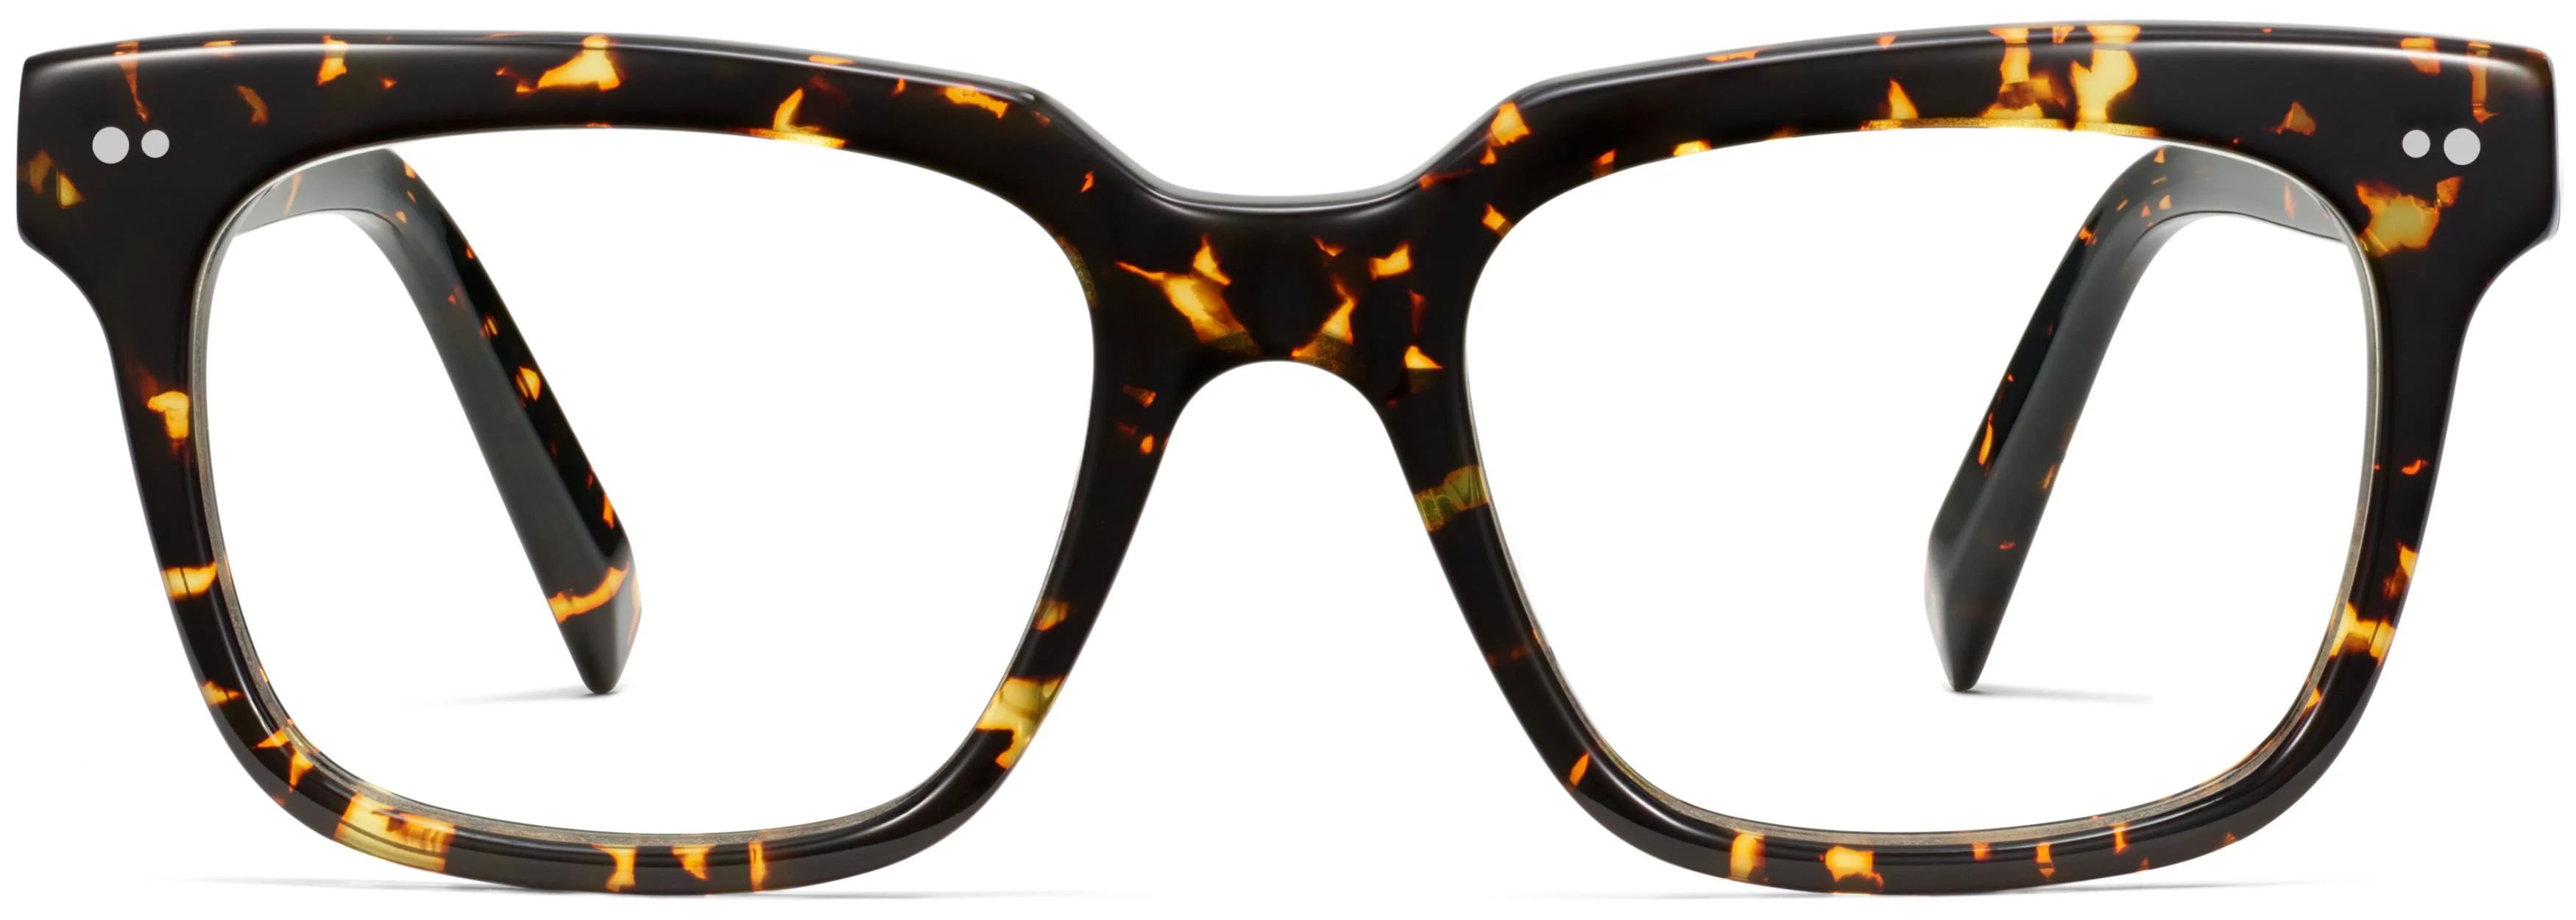 Winston Eyeglasses in Black Oak Tortoise | Warby Parker | Warby Parker (US)